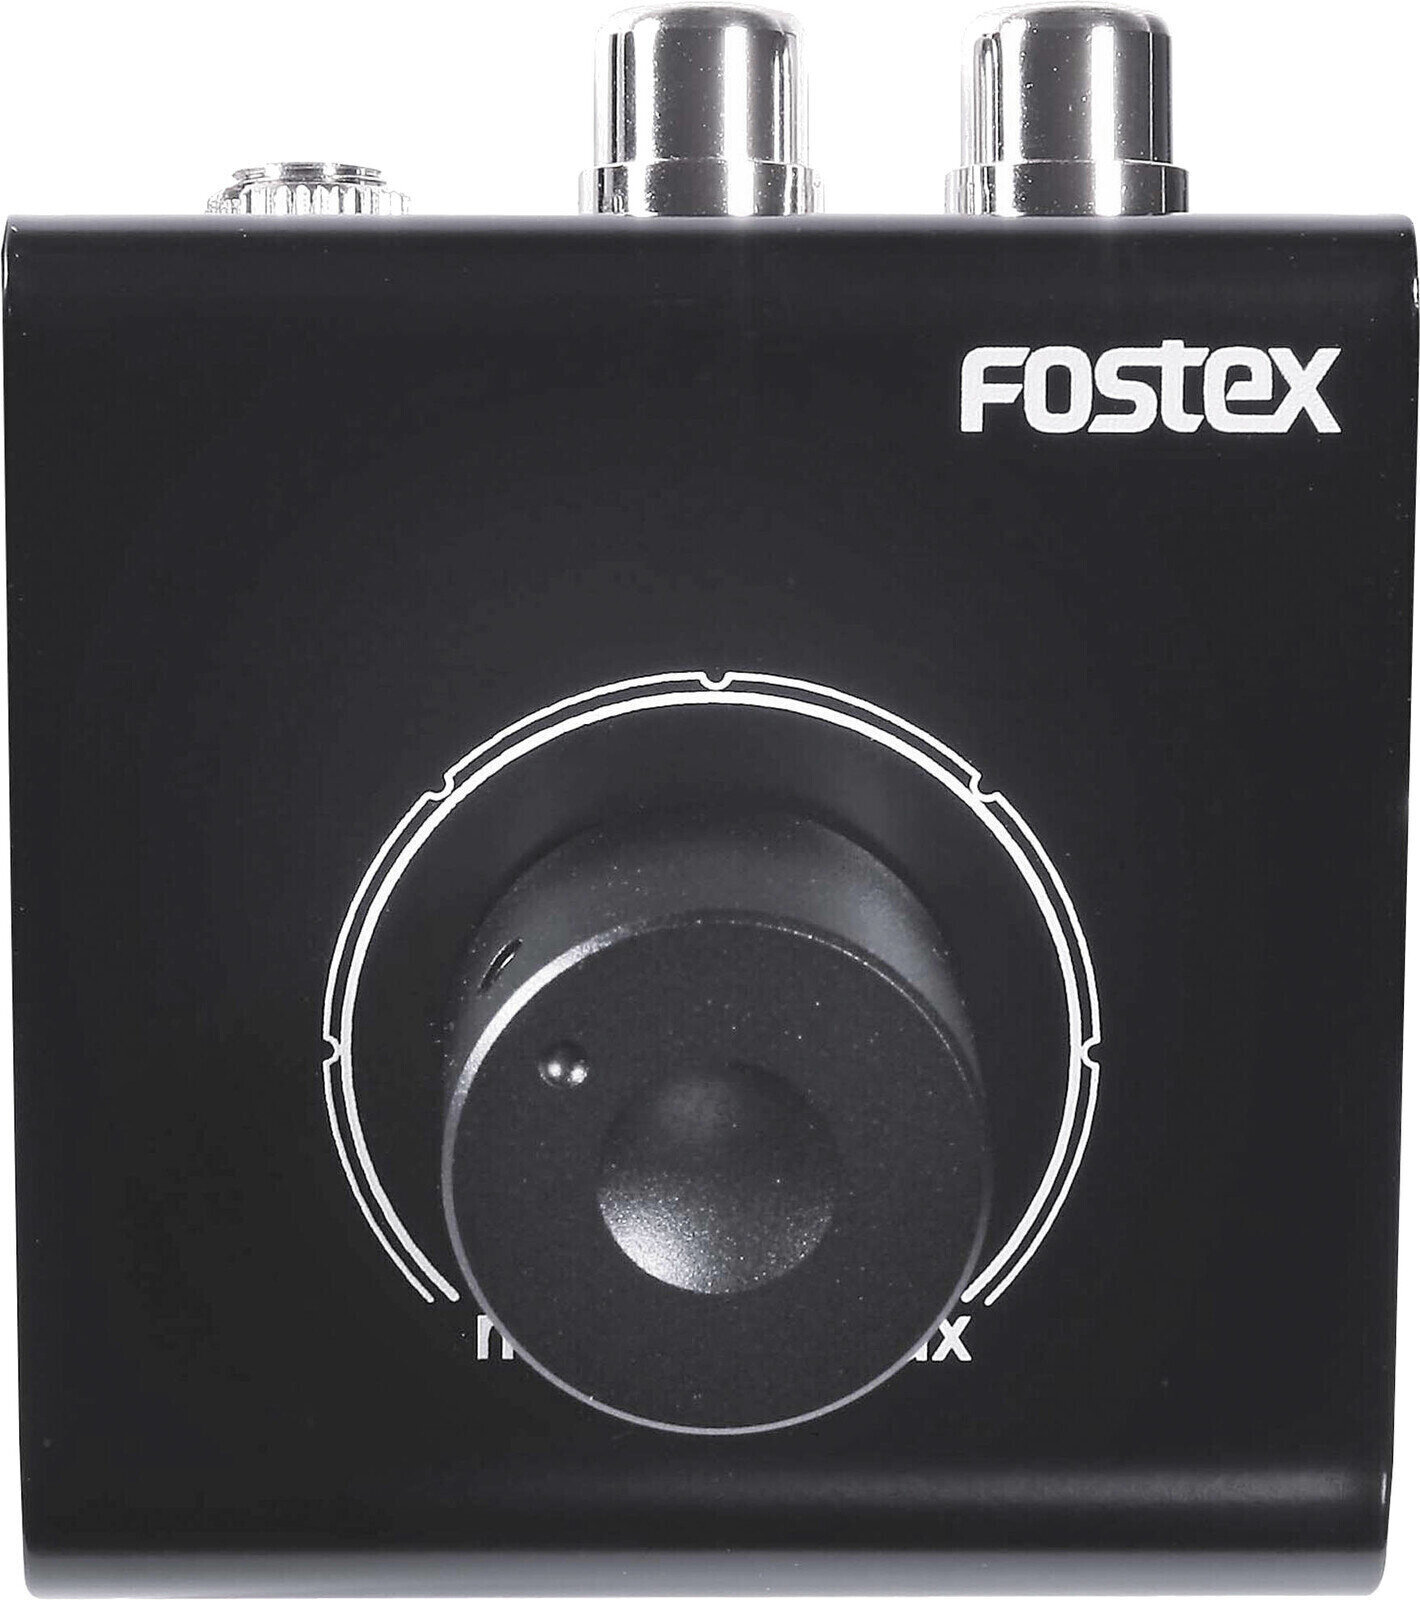 Selector/controlador de monitores Fostex PC-1e BK